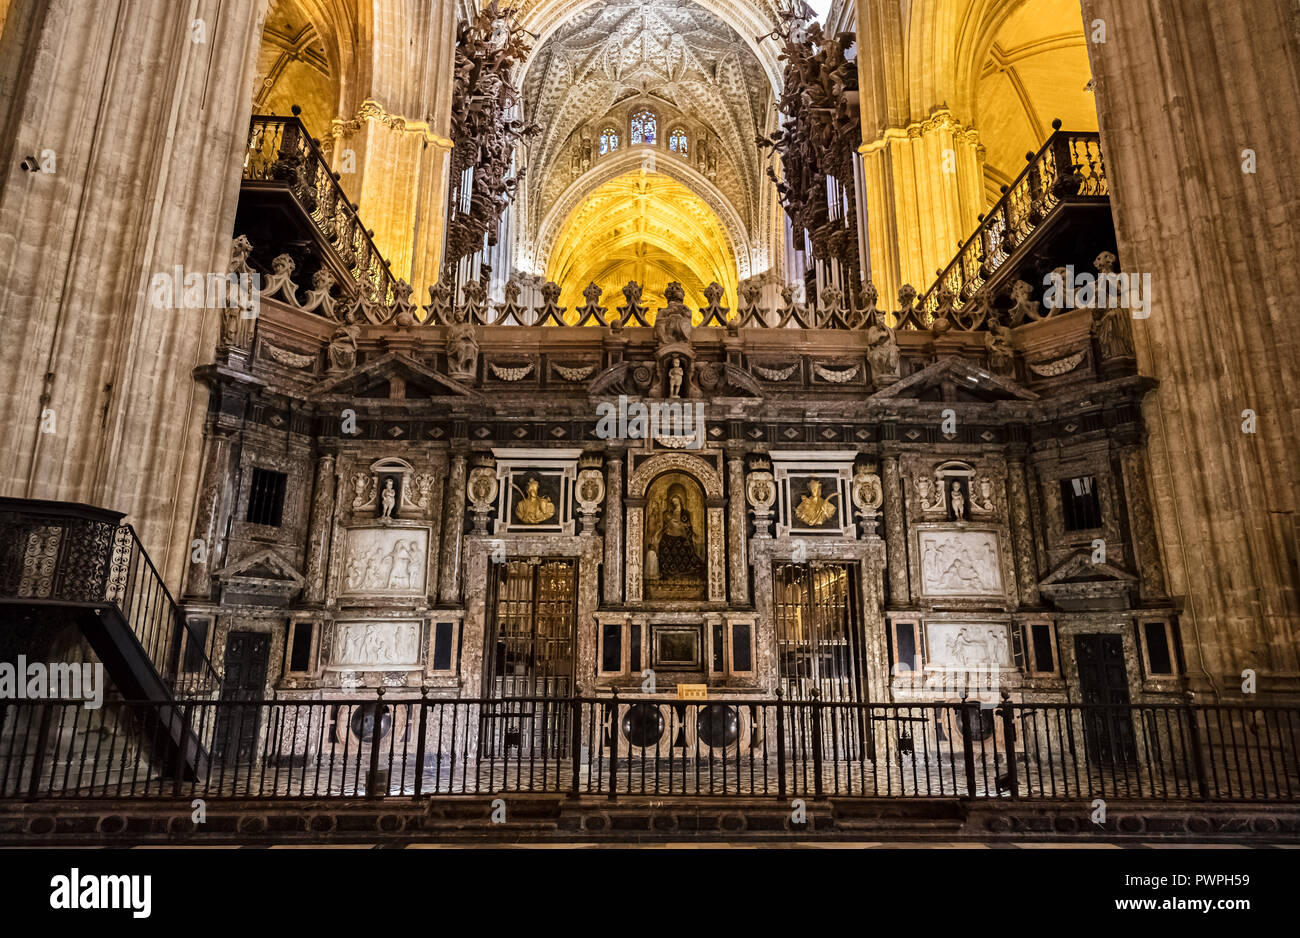 Vista del interior de la Catedral de Sevilla, Sevilla, España Foto de stock